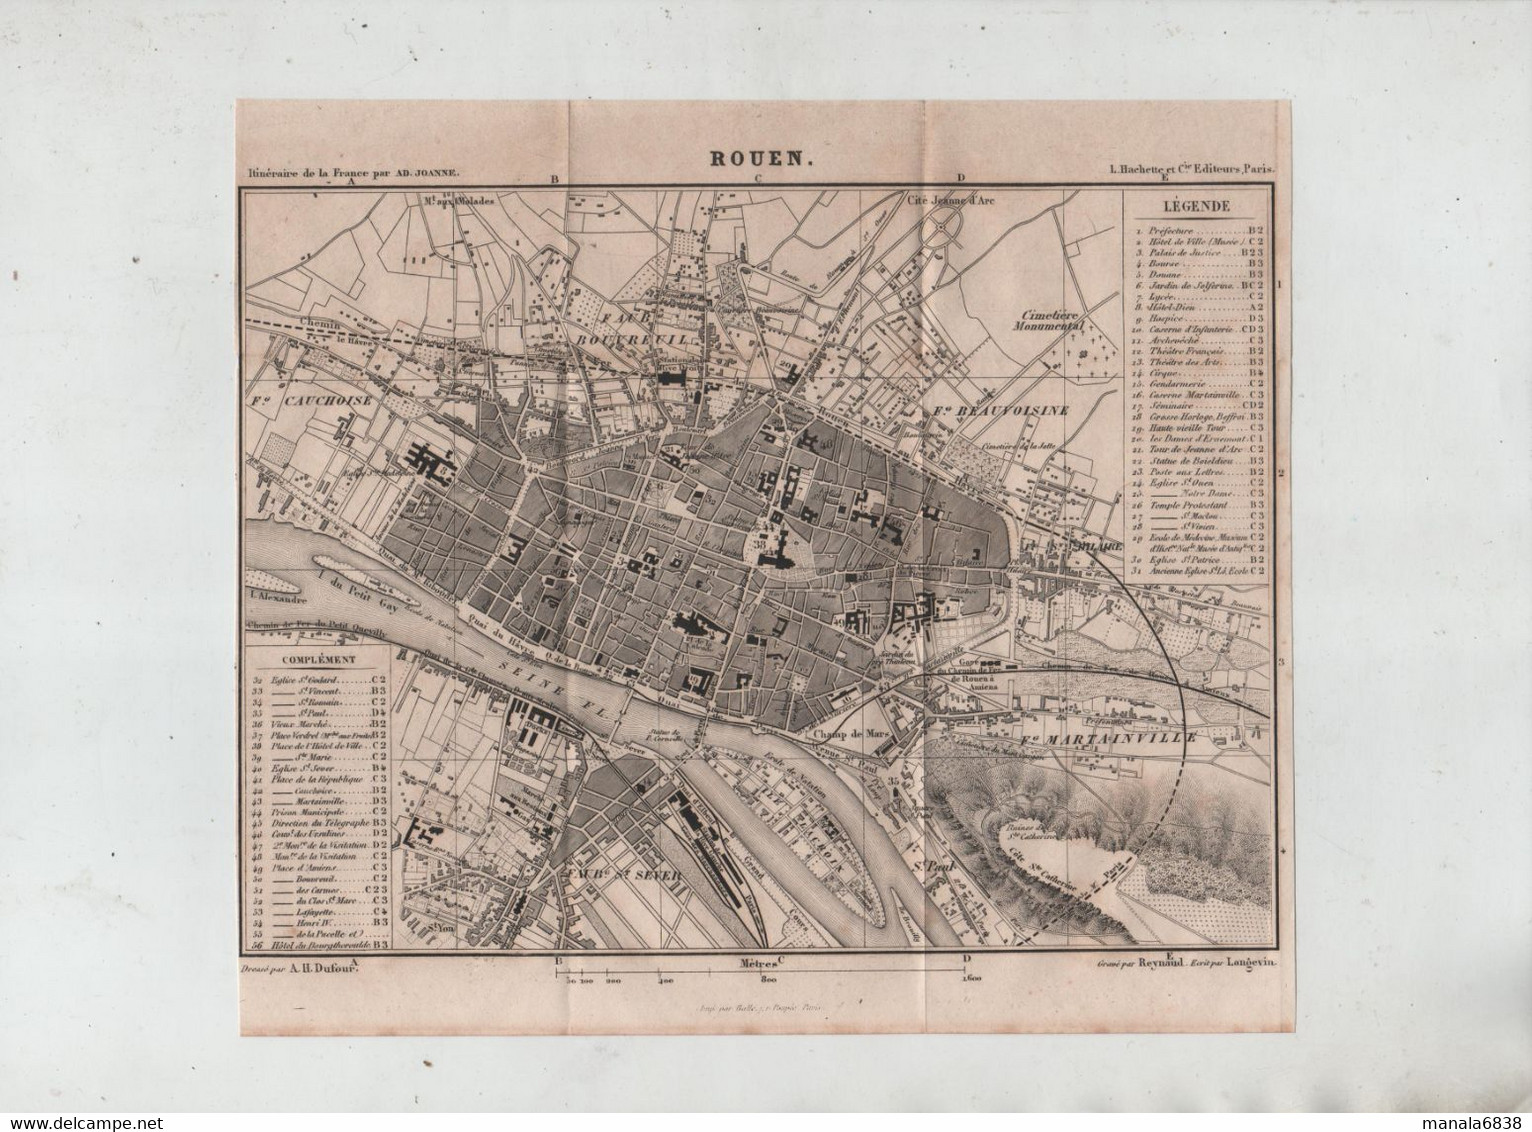 Rouen En 1877 Dufour Gare Voie Ferrée Faubourg Martainville Beauvoisine Bouvreuil Cauchoise Saint Sever Reynaud - Other Plans